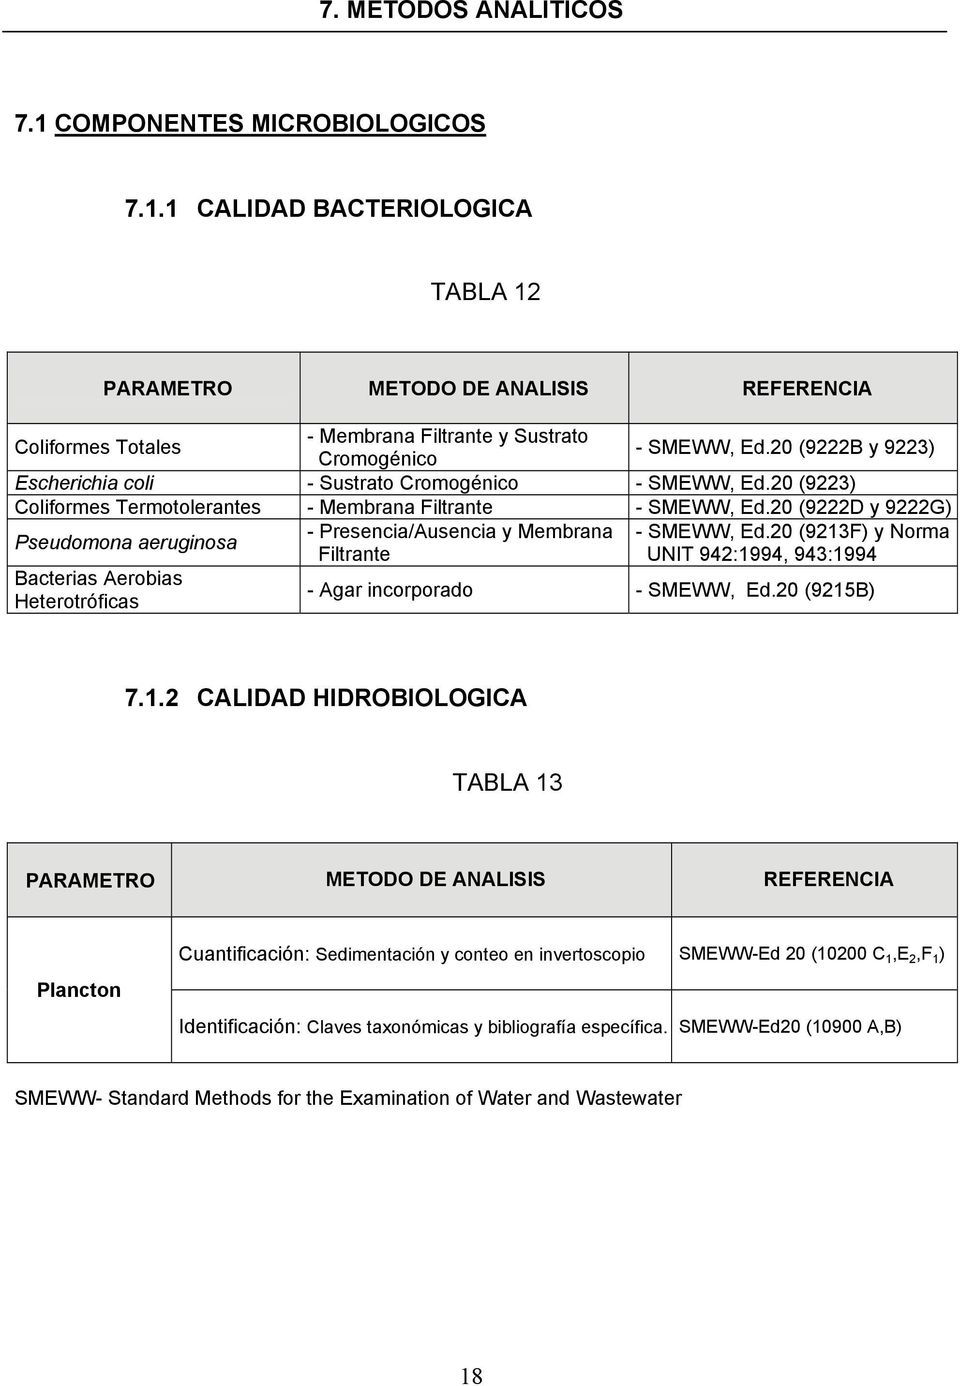 20 (9222D y 9222G) Pseudomona aeruginosa - Presencia/Ausencia y Membrana - SMEWW, Ed.